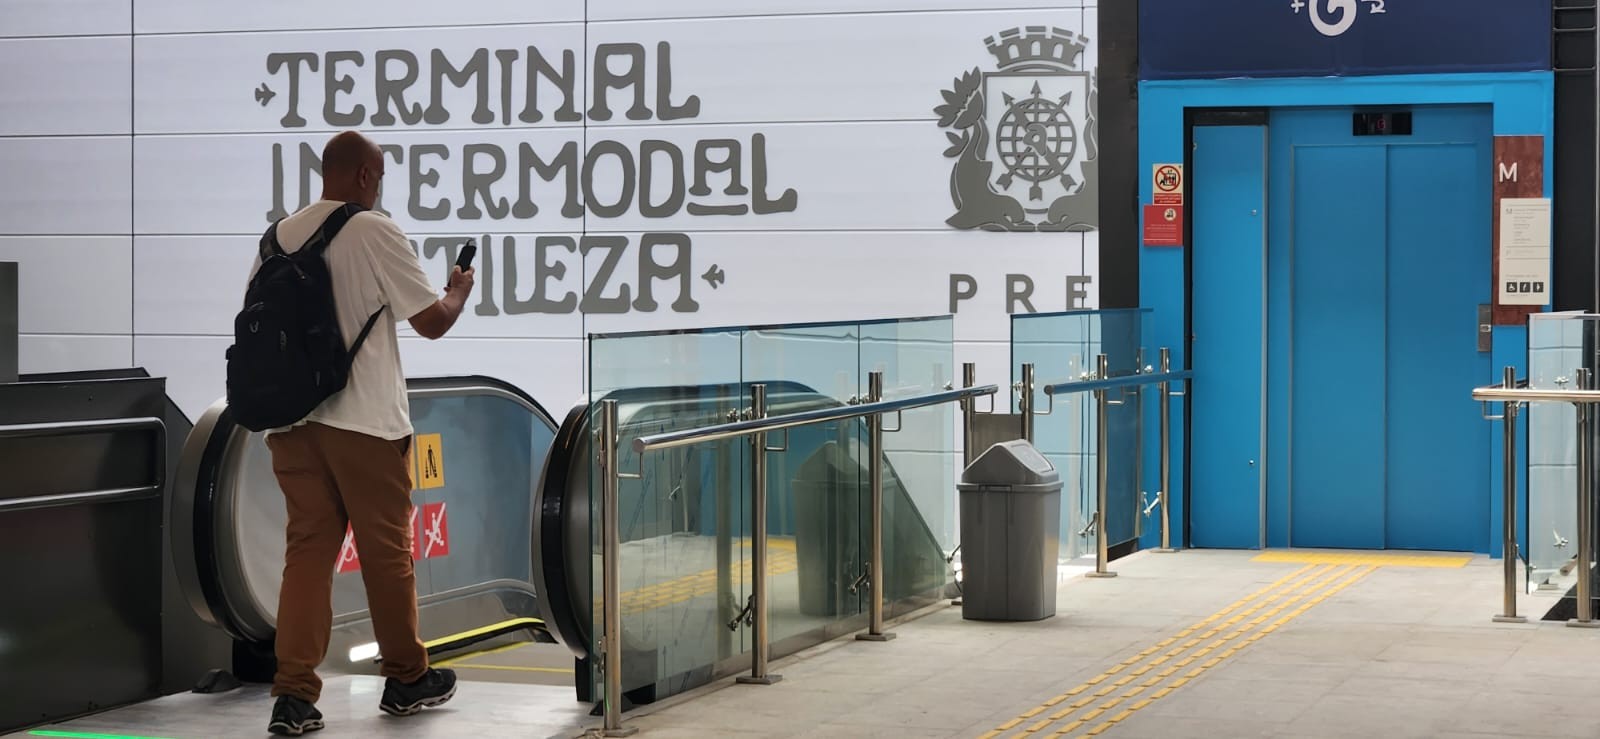 O Terminal Intermodal Gentileza (TIG), no Caju, entra em operação, recebendo passageiros como ponto de integração entre ônibus municipais, VLT e BRT — Foto: Custódio Coimbra/Agência O Globo